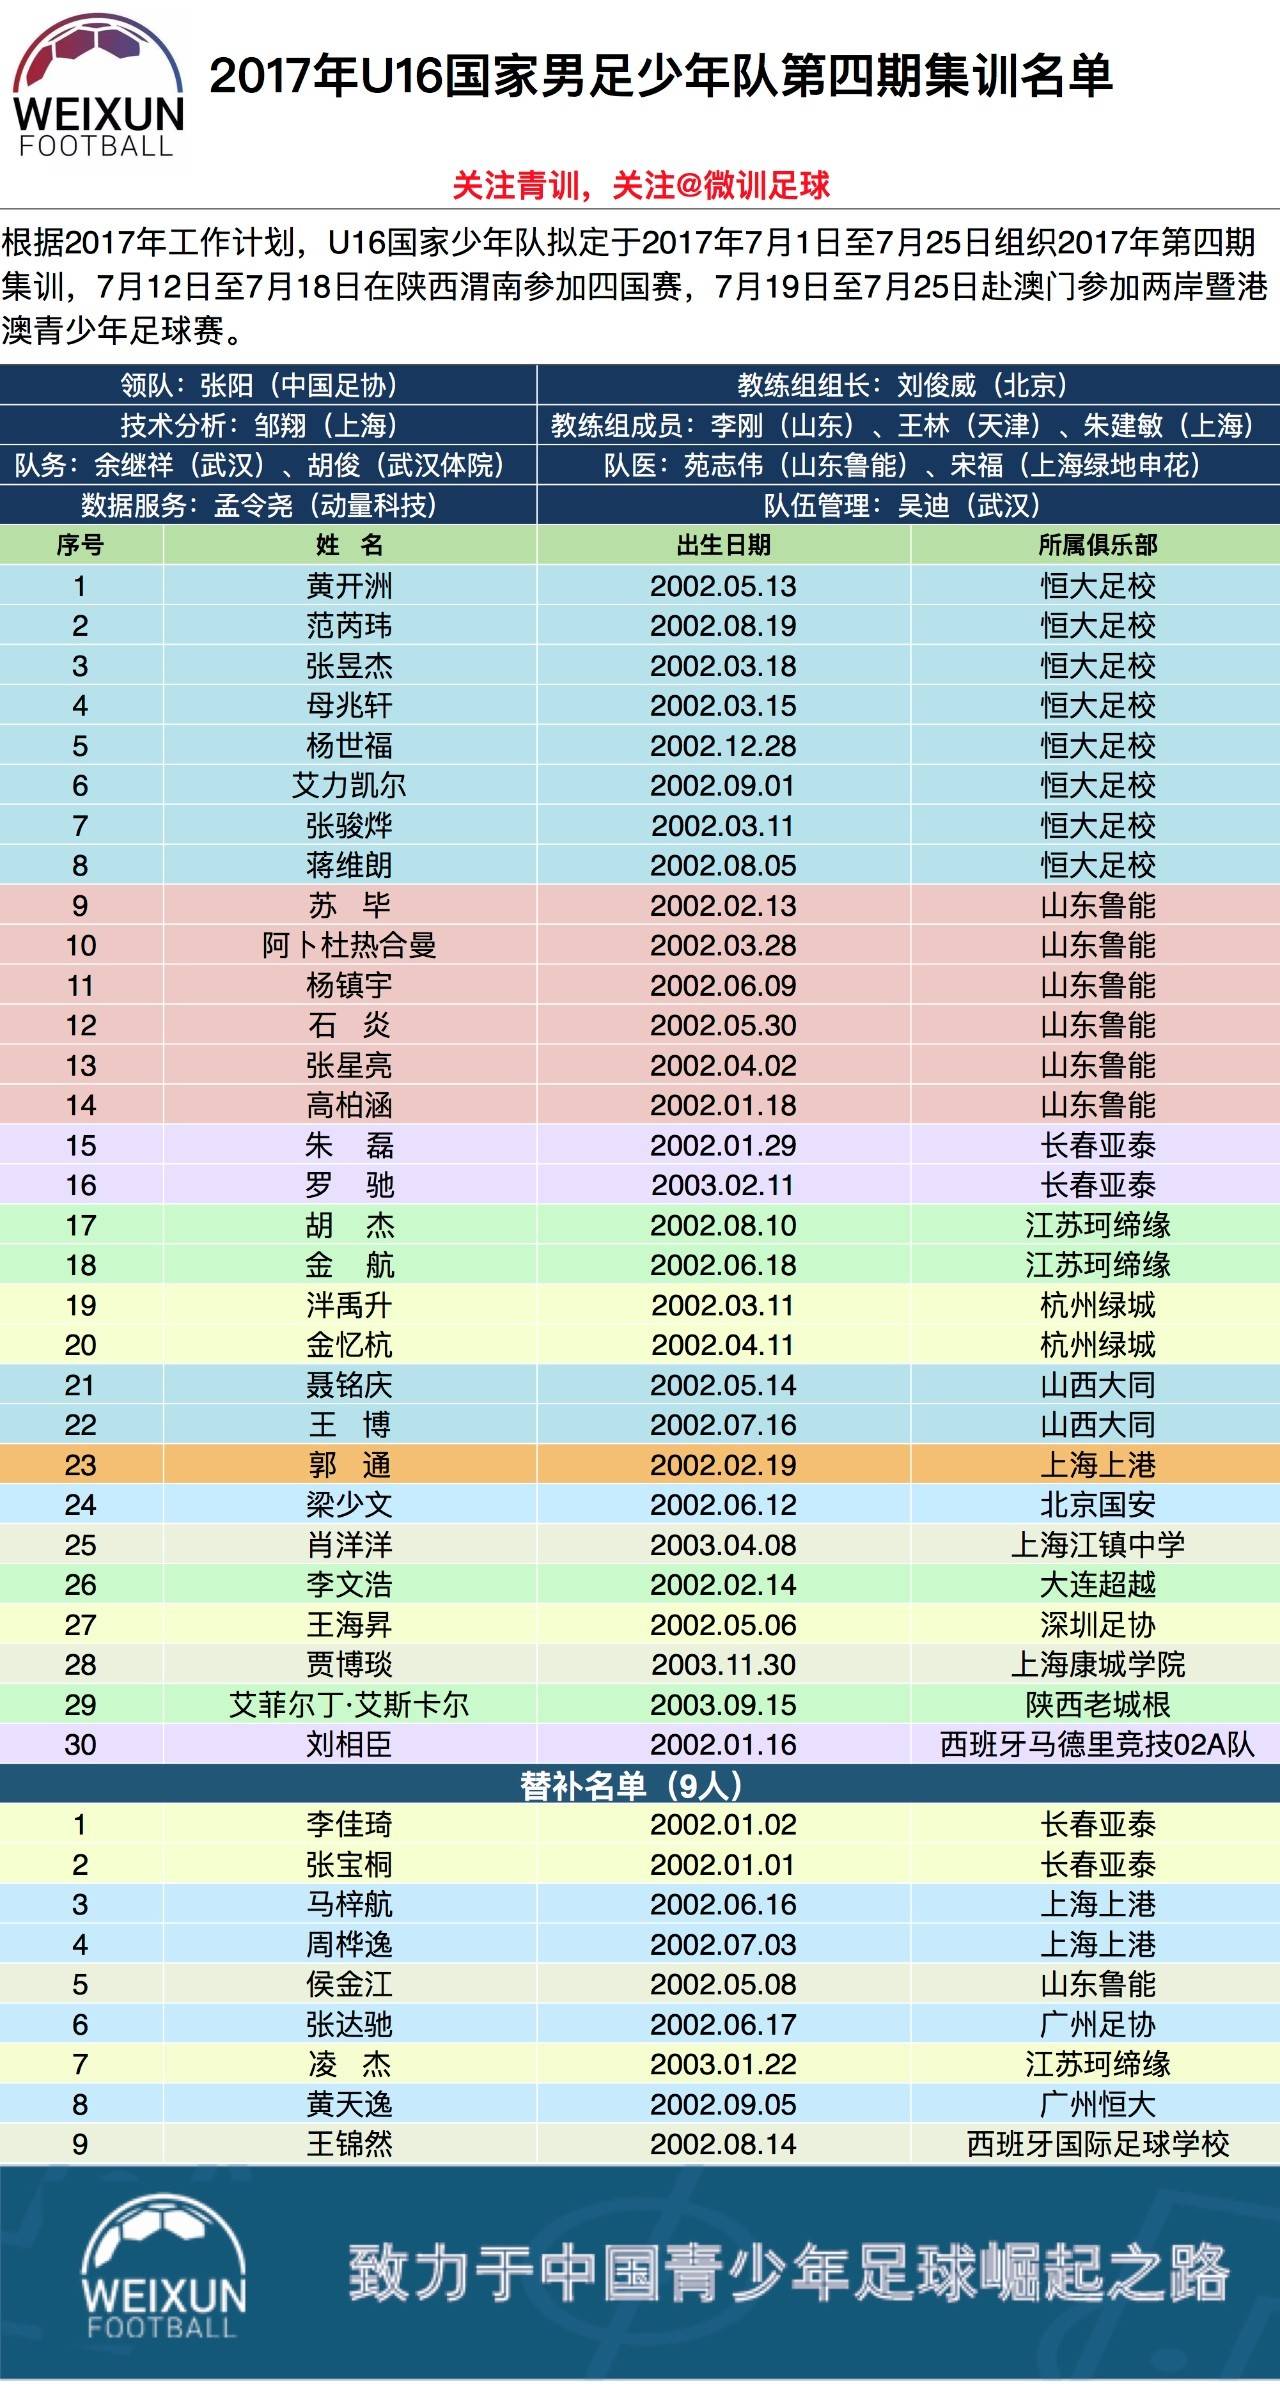 中国国家队公布世预赛24名随队名单武磊谢鹏飞伤落选